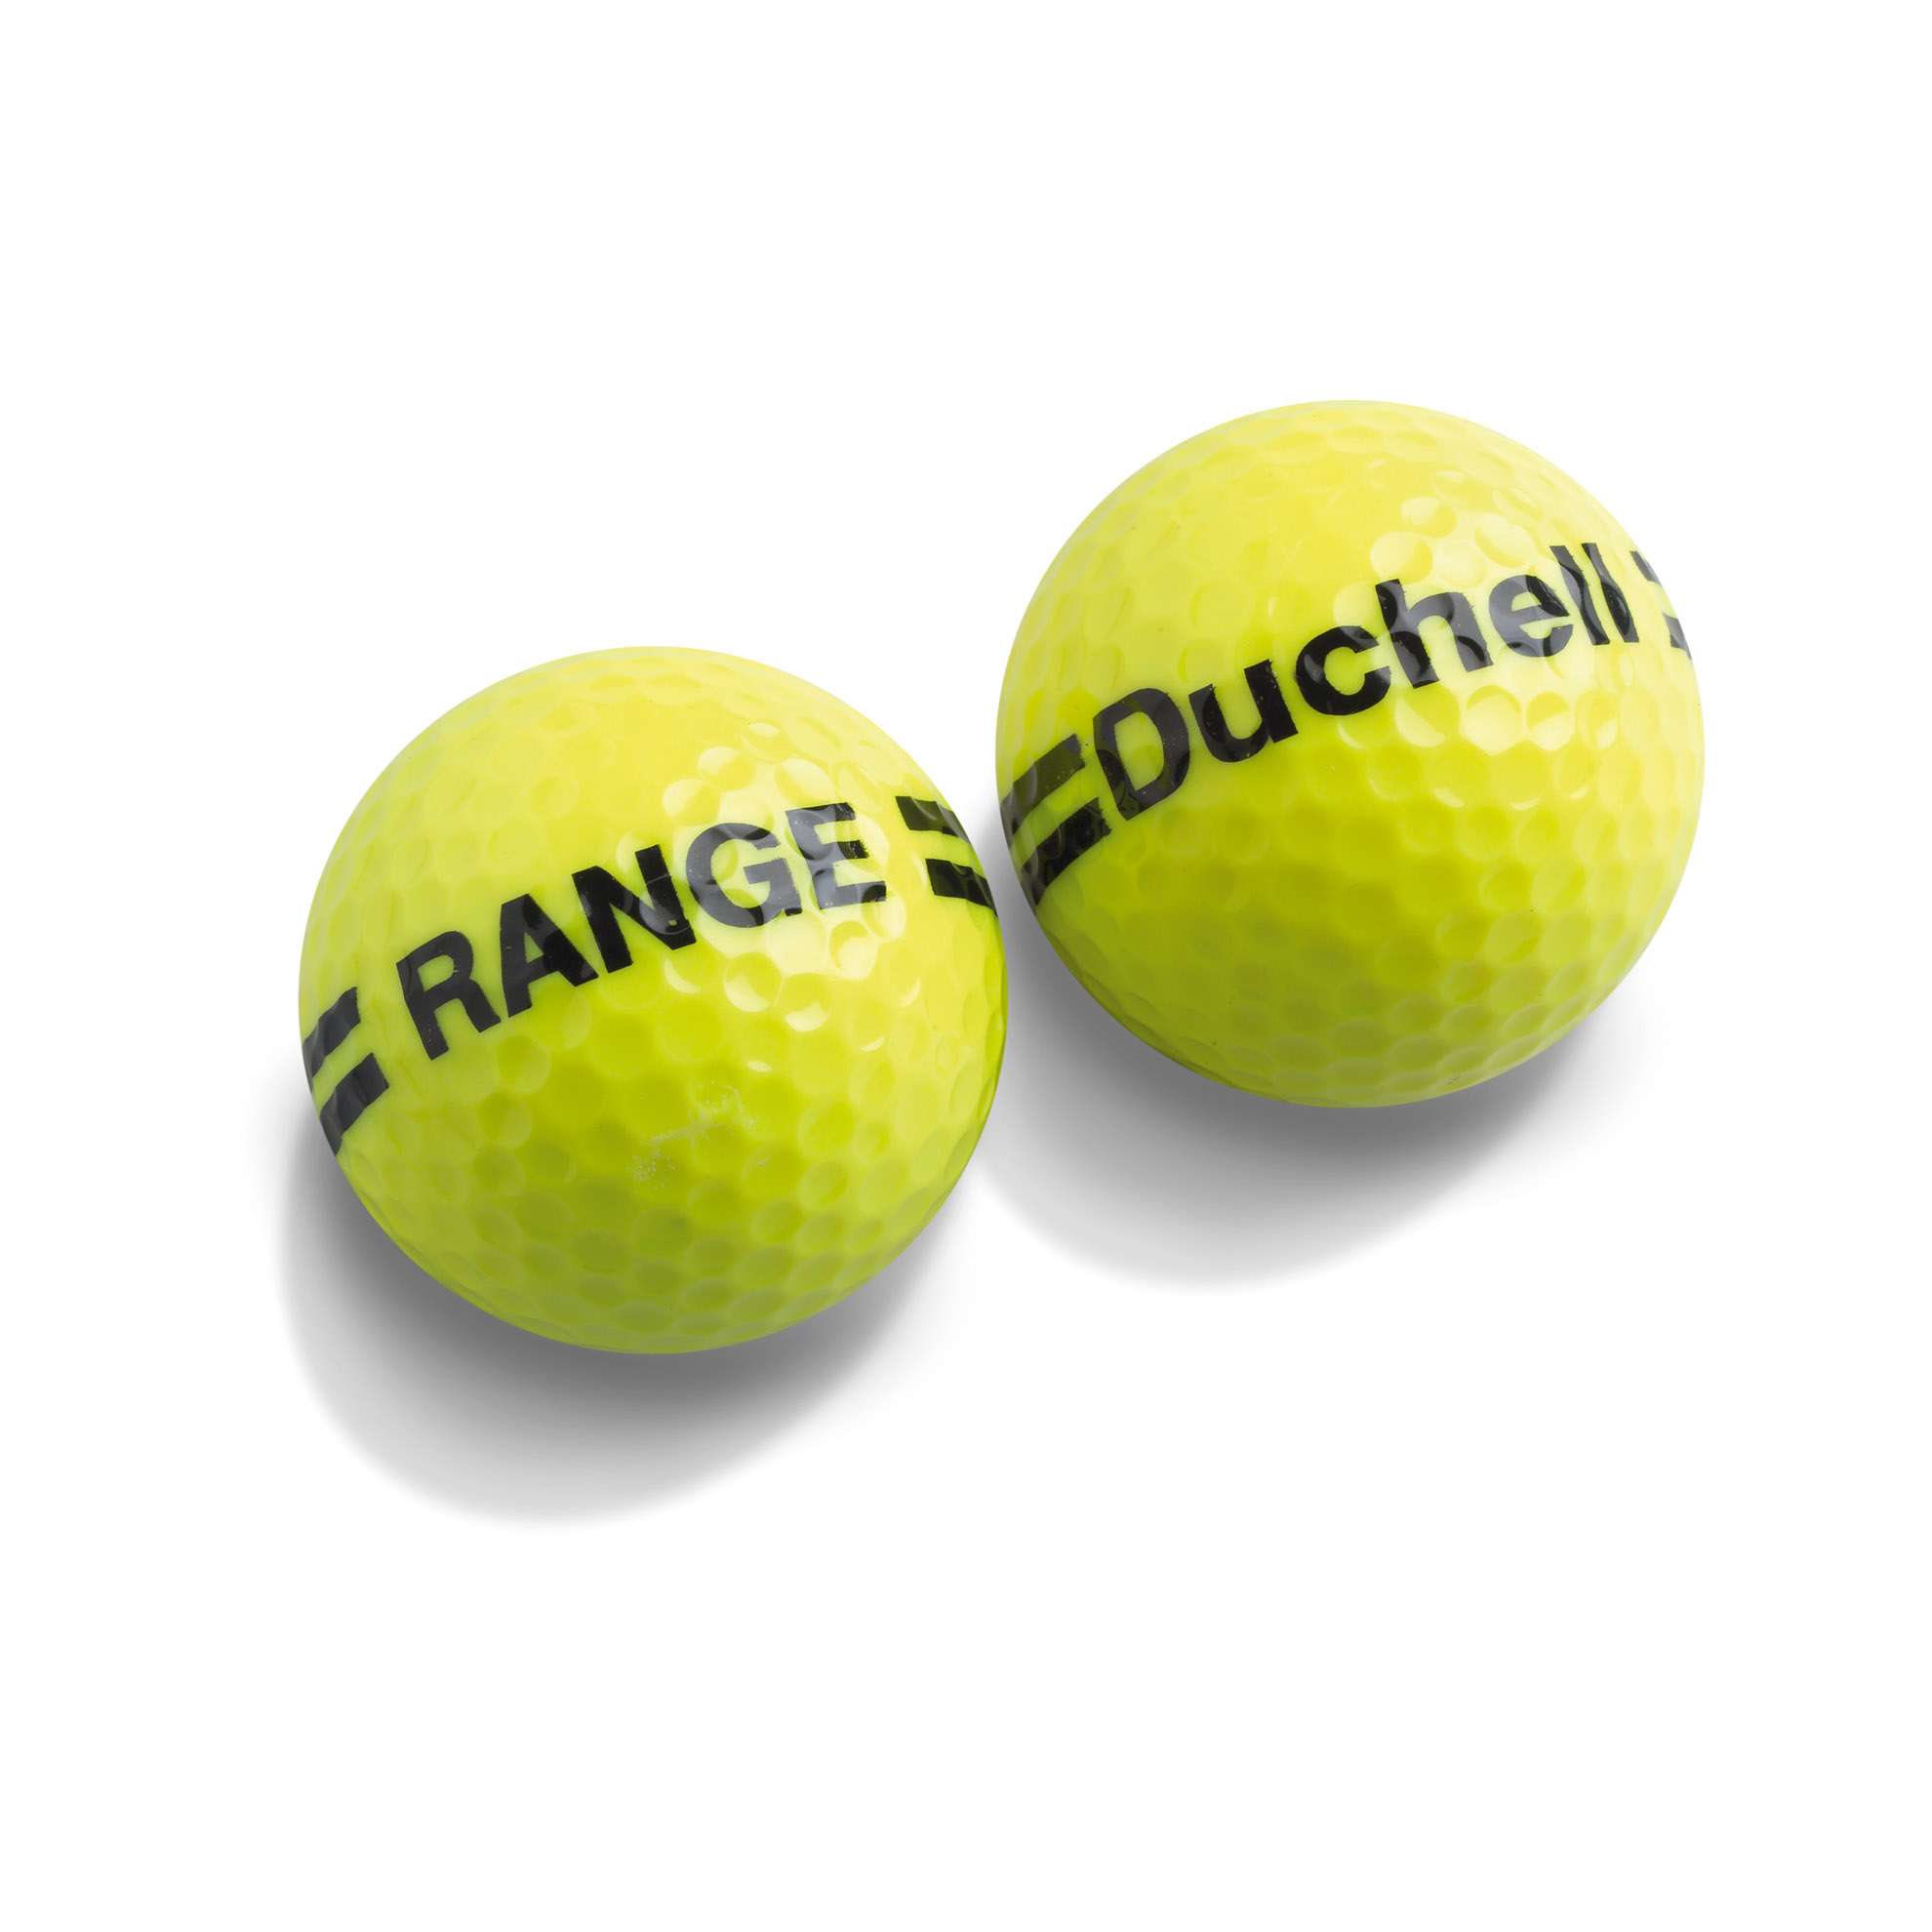 Картинка Мячи гольф Duchell (yellow) DU21008  от магазина Гольф Маркет - магазин товаров для гольфа